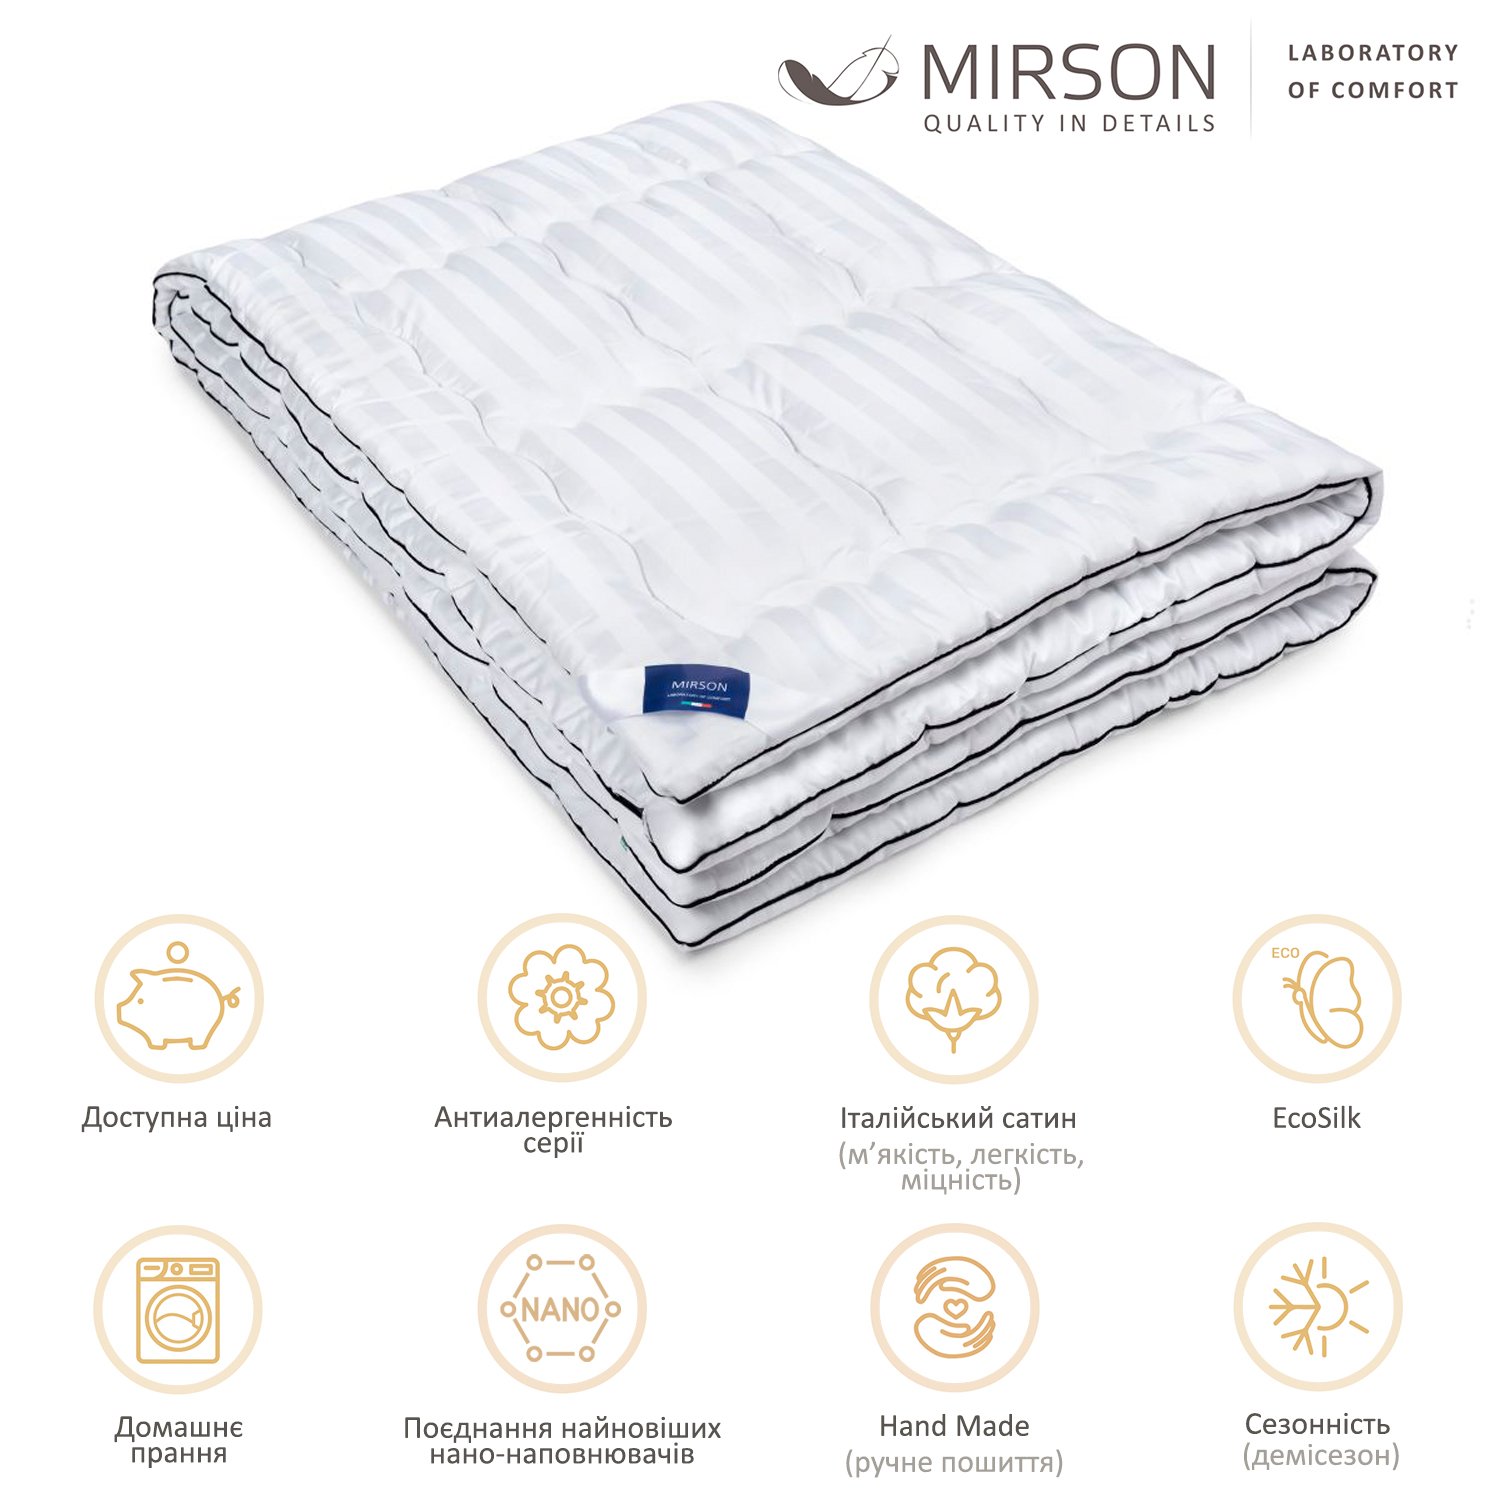 Одеяло антиаллергенное MirSon Royal Pearl Hand Made EcoSilk №066, демисезонное, 172x205 см, белое - фото 5